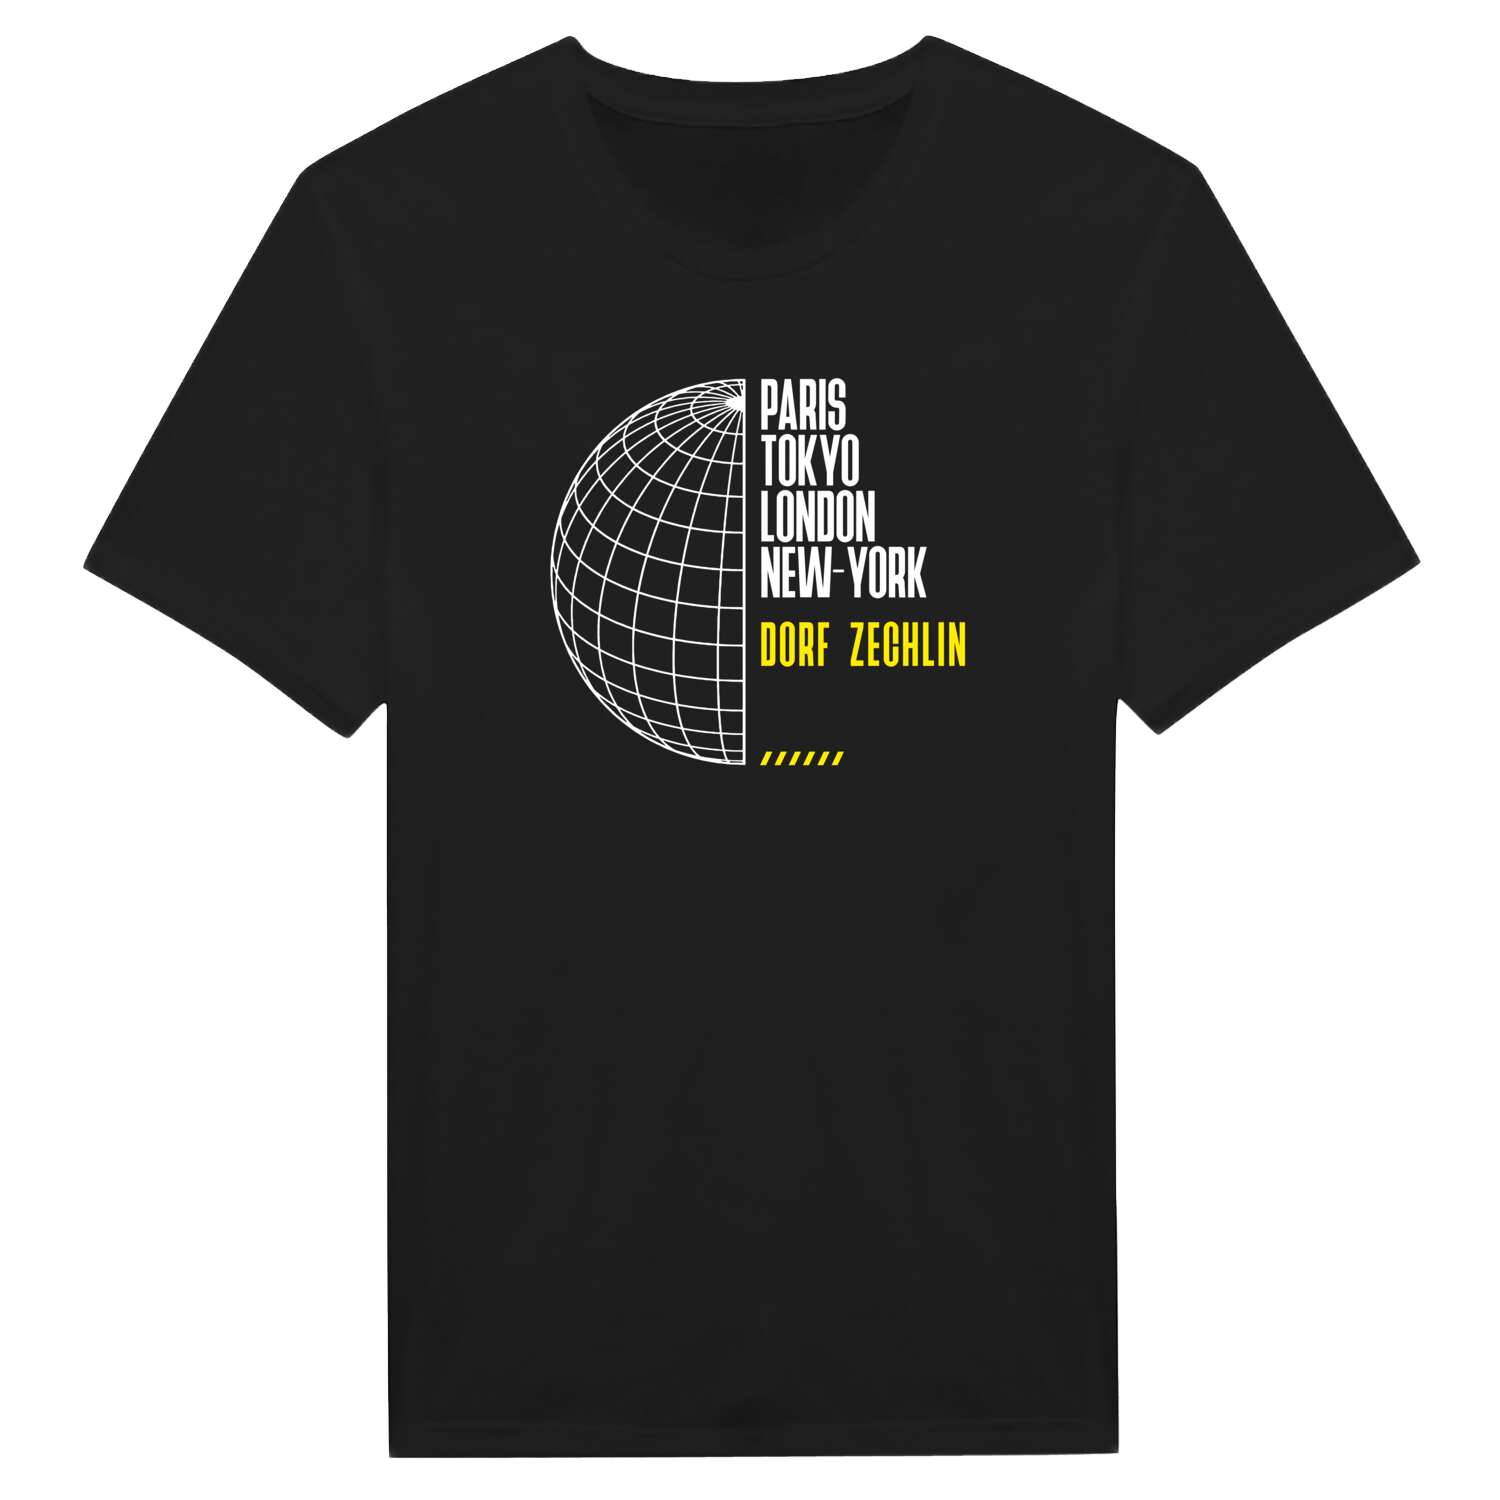 Dorf Zechlin T-Shirt »Paris Tokyo London«